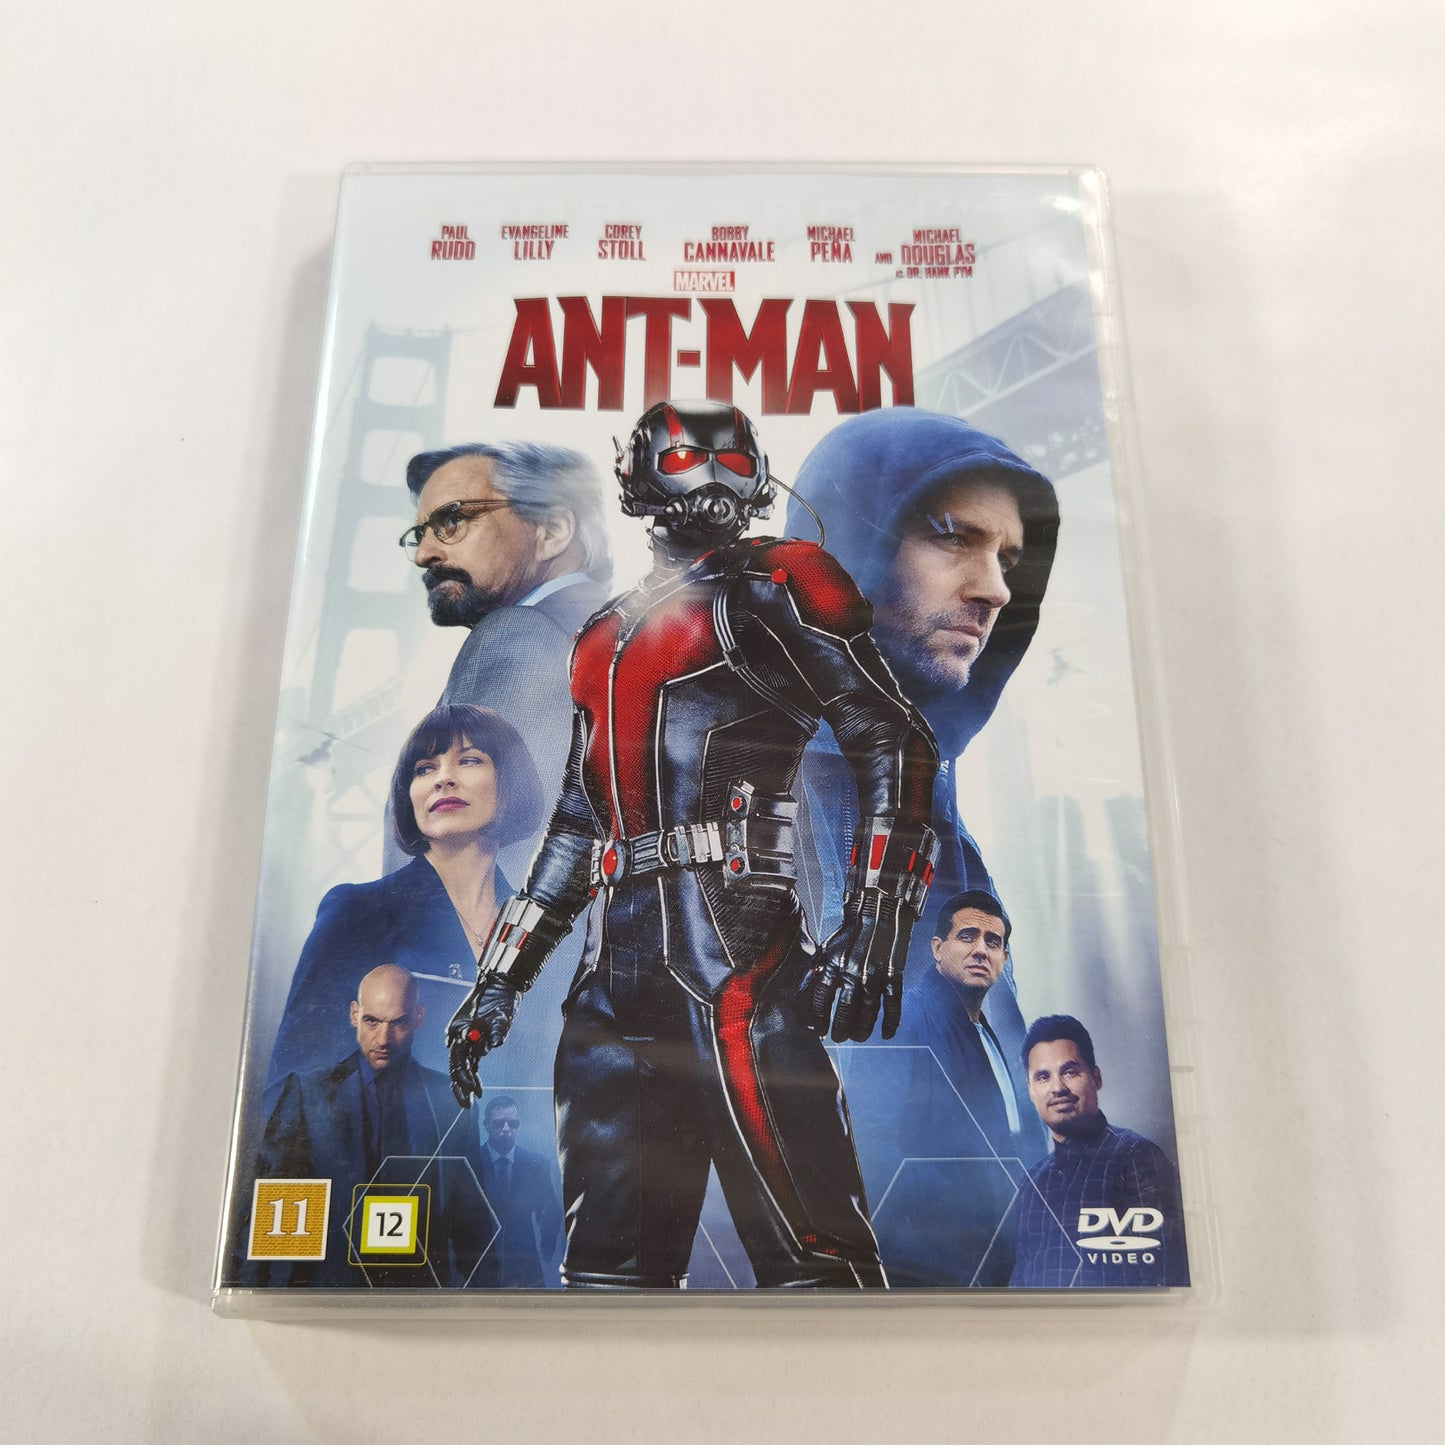 Ant-Man (2015) - DVD SE NO DK FI